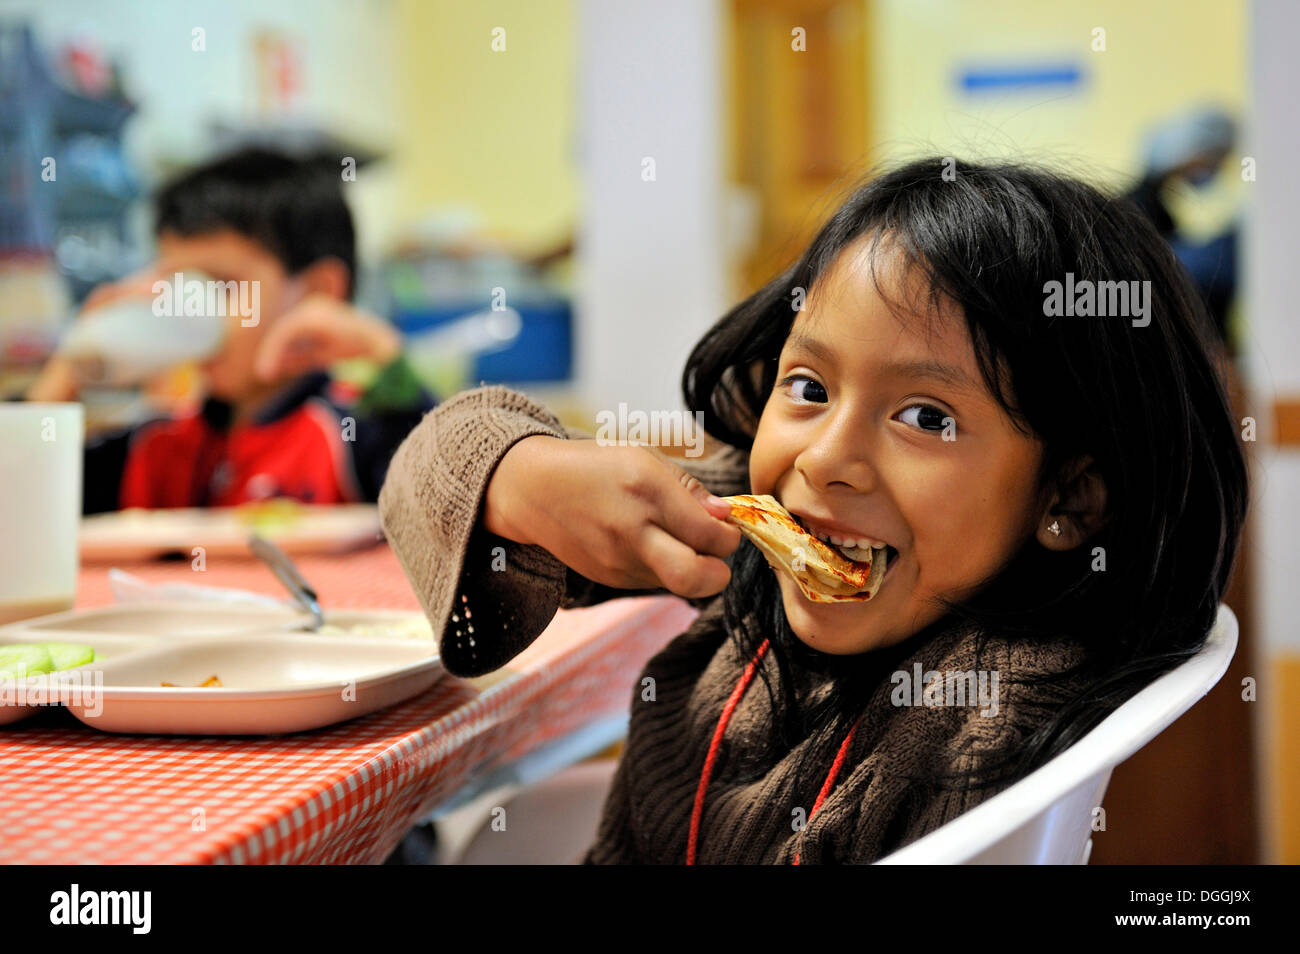 Girl eating a tortilla, Puebla, Mexico, Central America Stock Photo